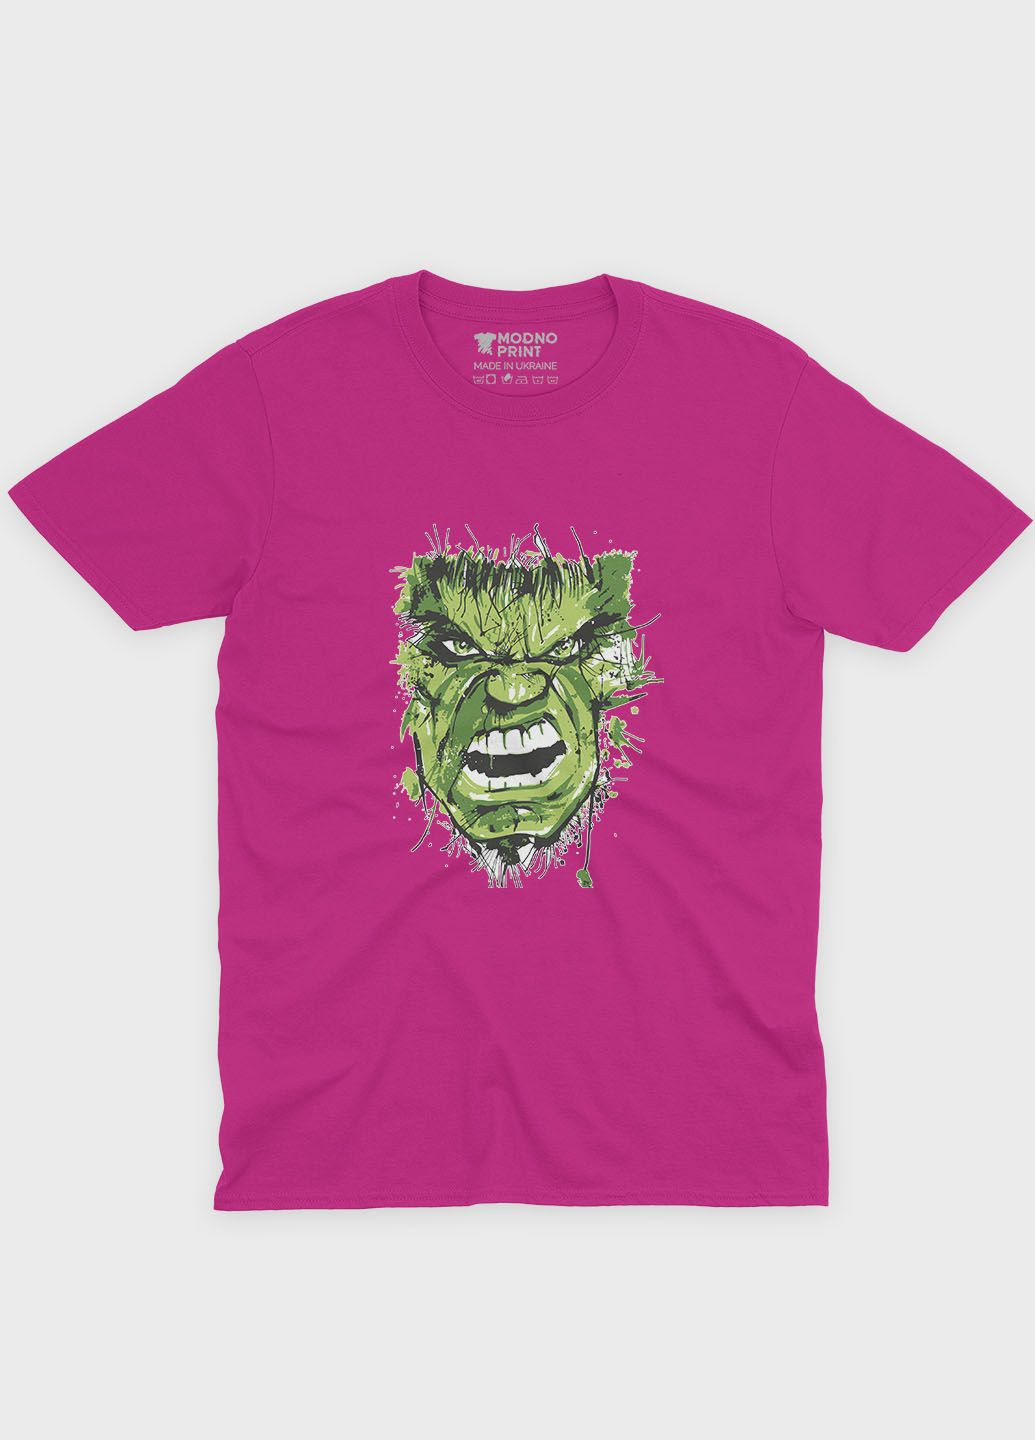 Розовая демисезонная футболка для мальчика с принтом супергероя - халк (ts001-1-fuxj-006-018-012-b) Modno